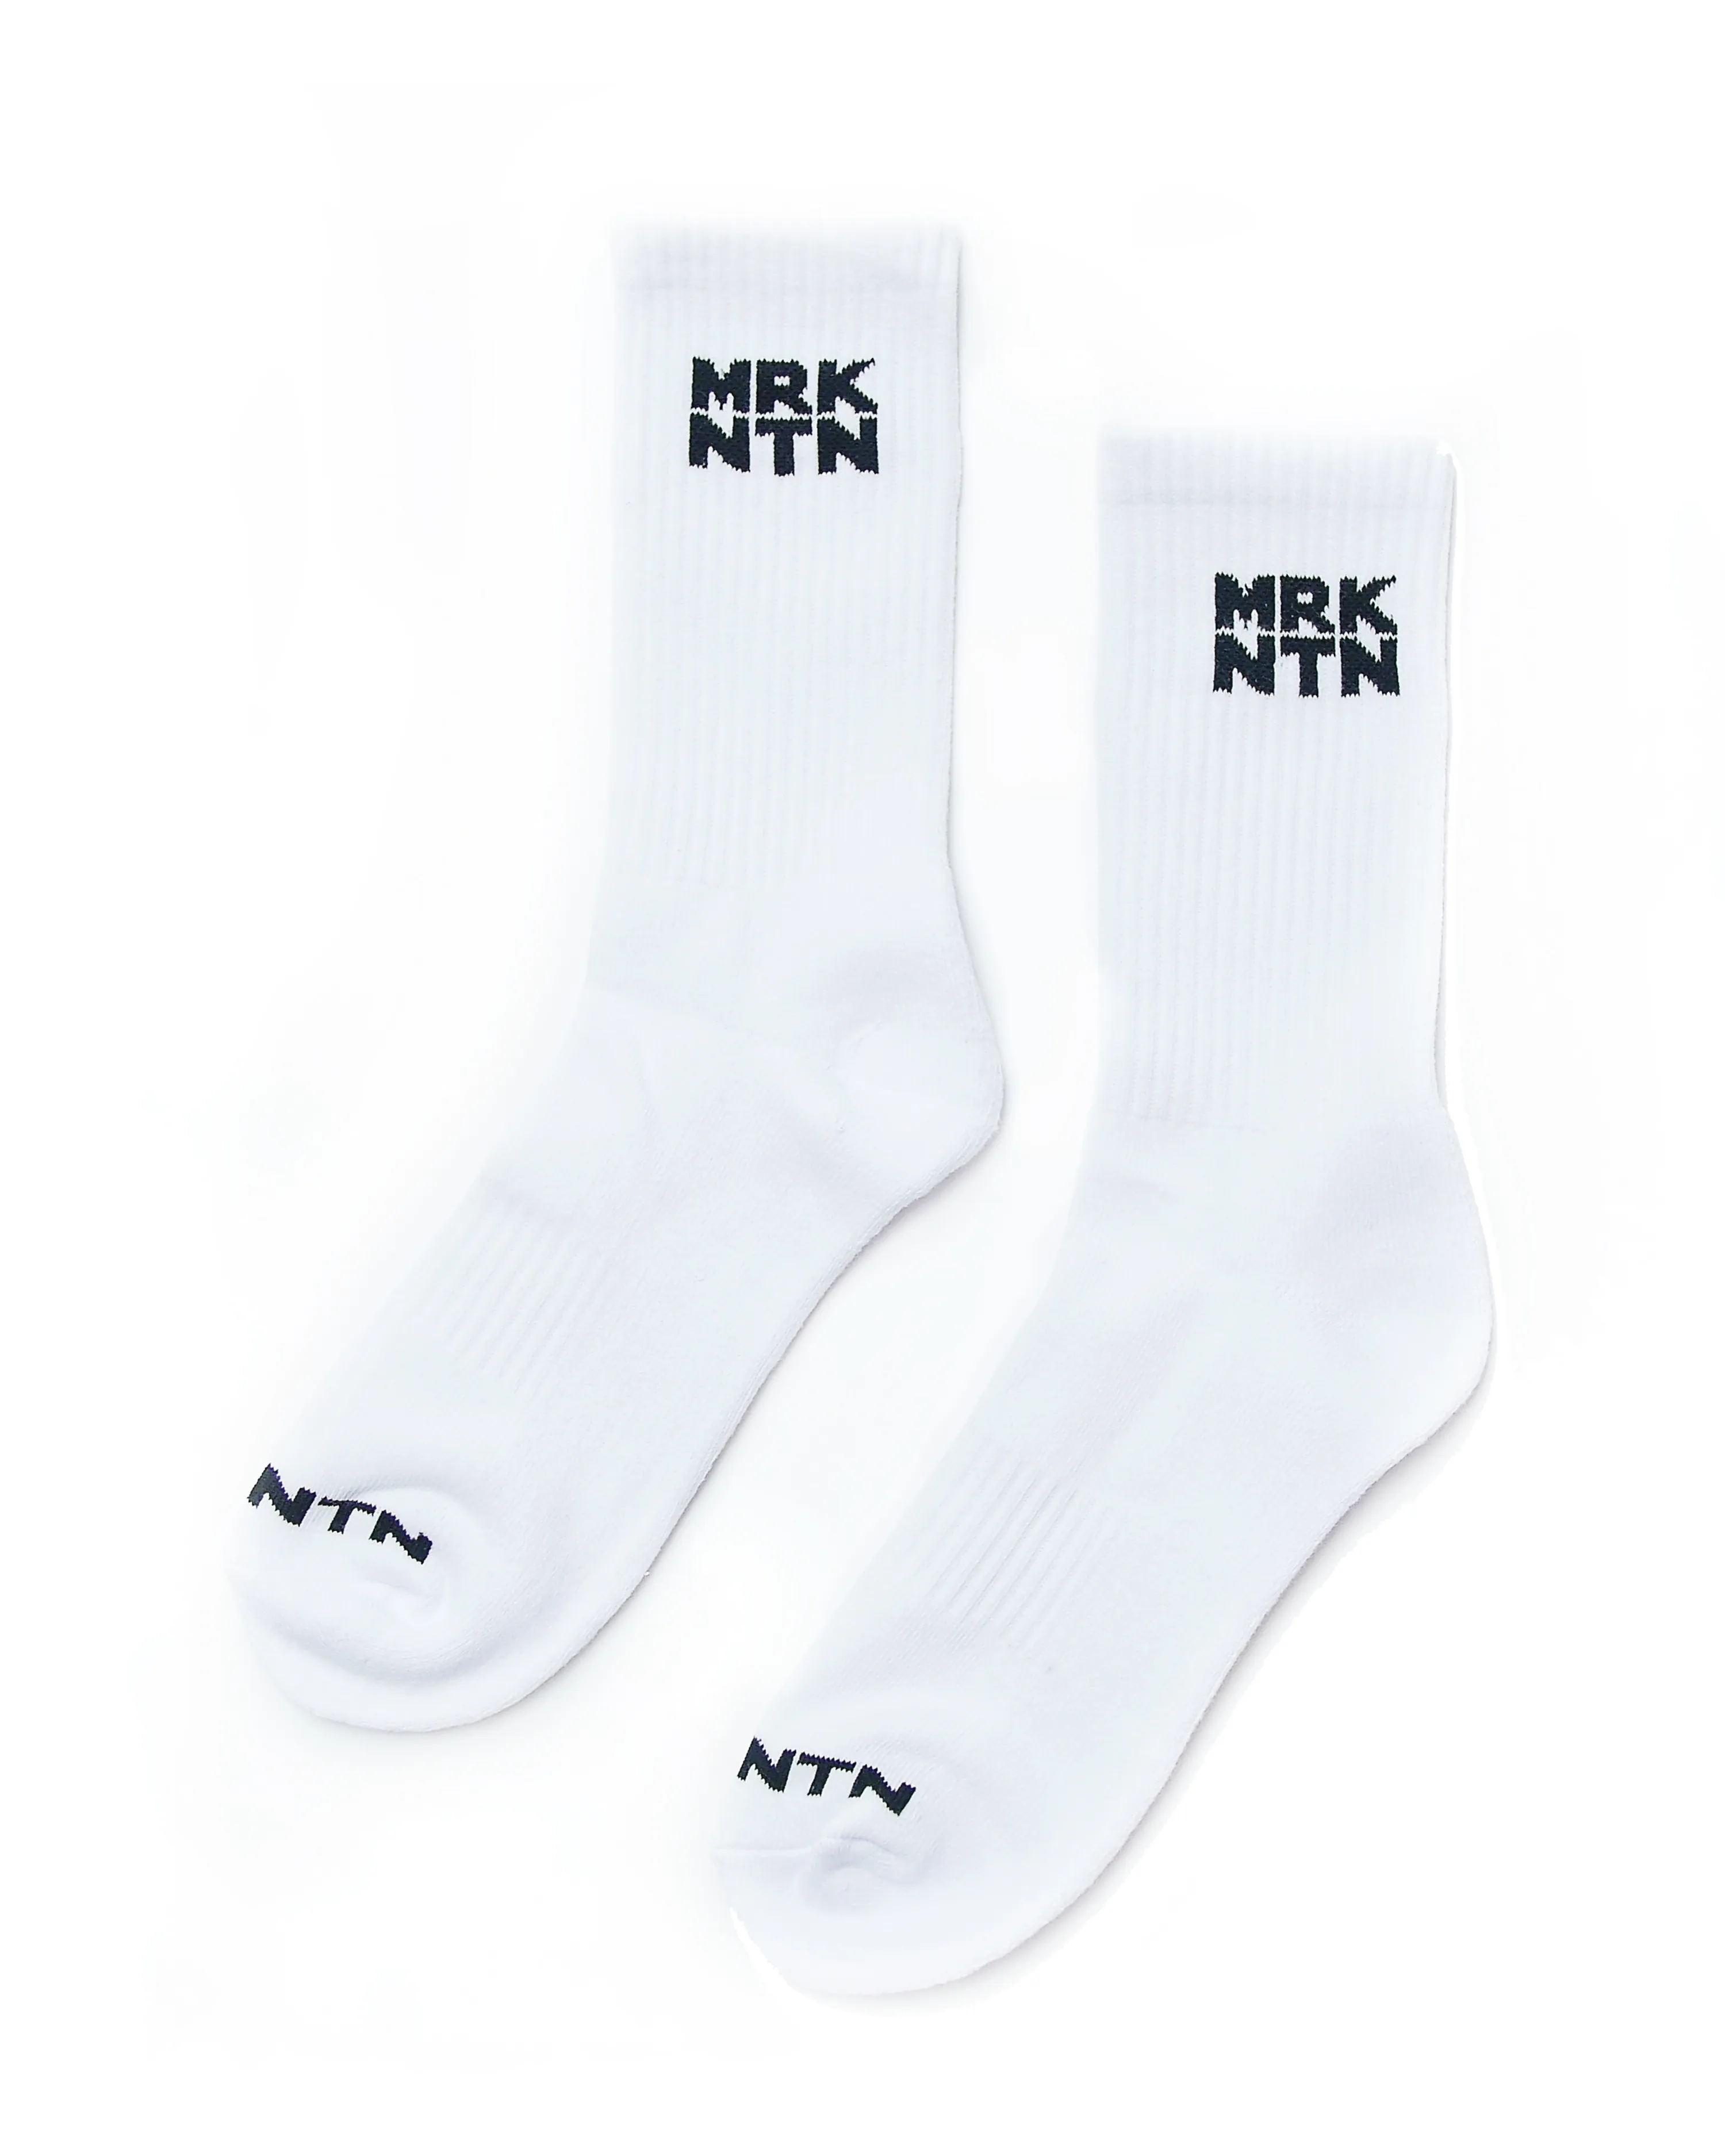 Le duo de chaussettes noires et blanches de MRKNTN